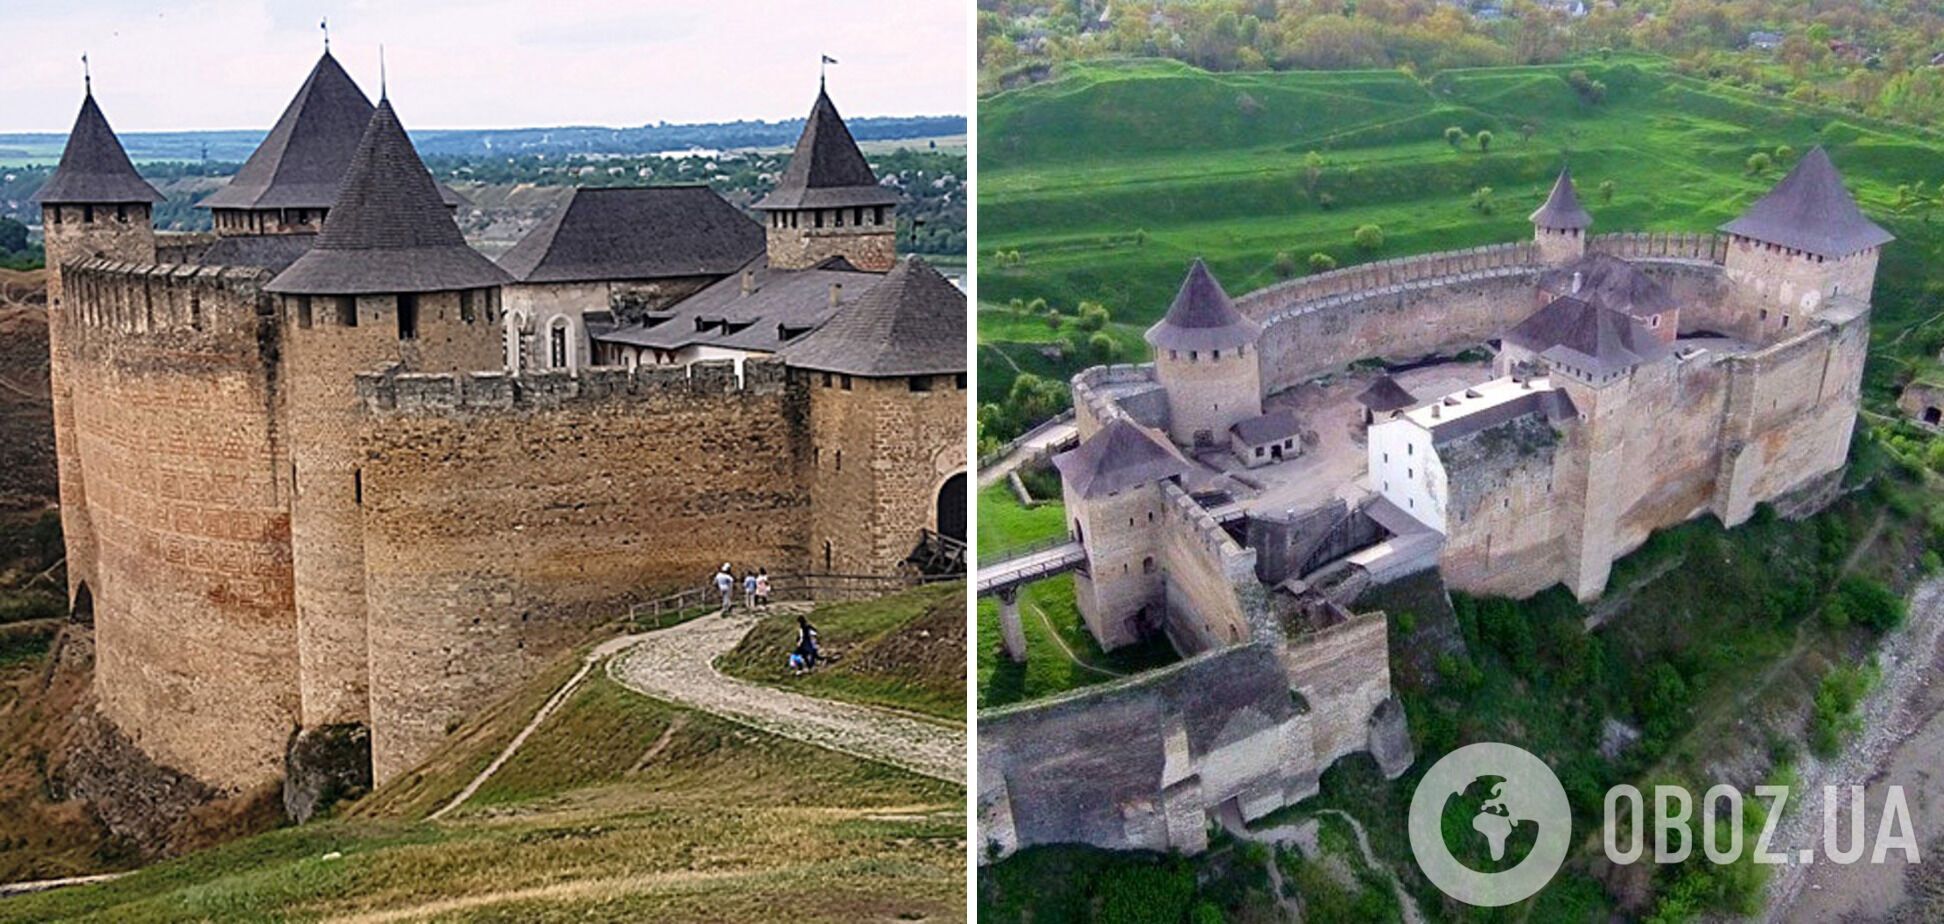 Хотинская крепость является архитектурным сооружением национального значения.